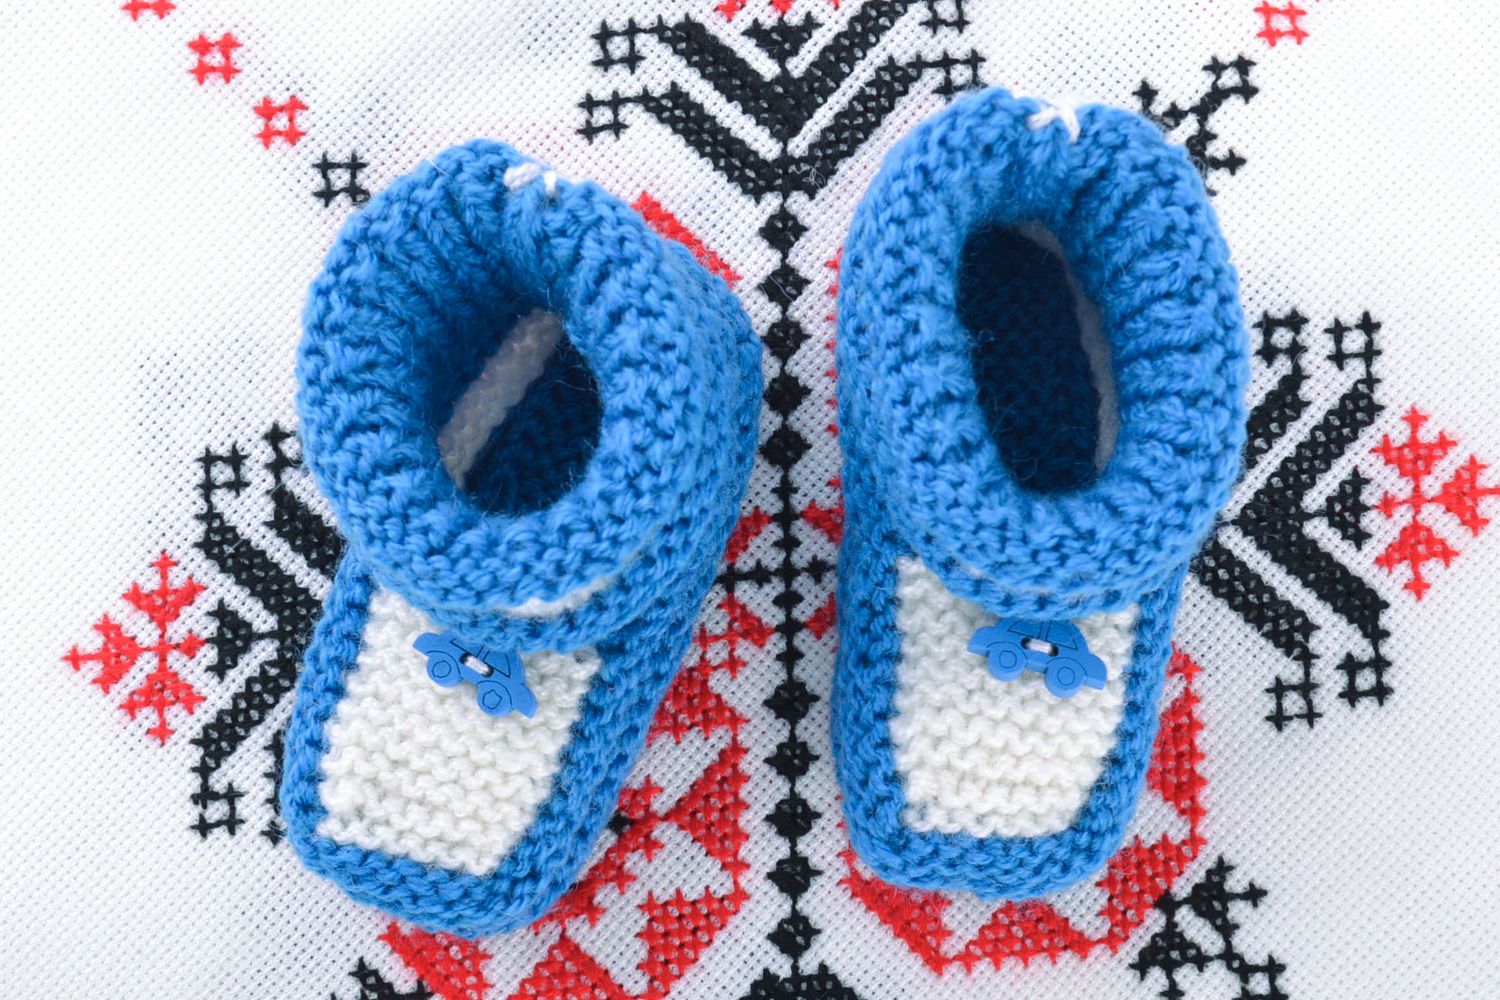 Пинетки для младенцев ручной вязки из натуральной шерсти теплые и красивые белые с голубым фото 1